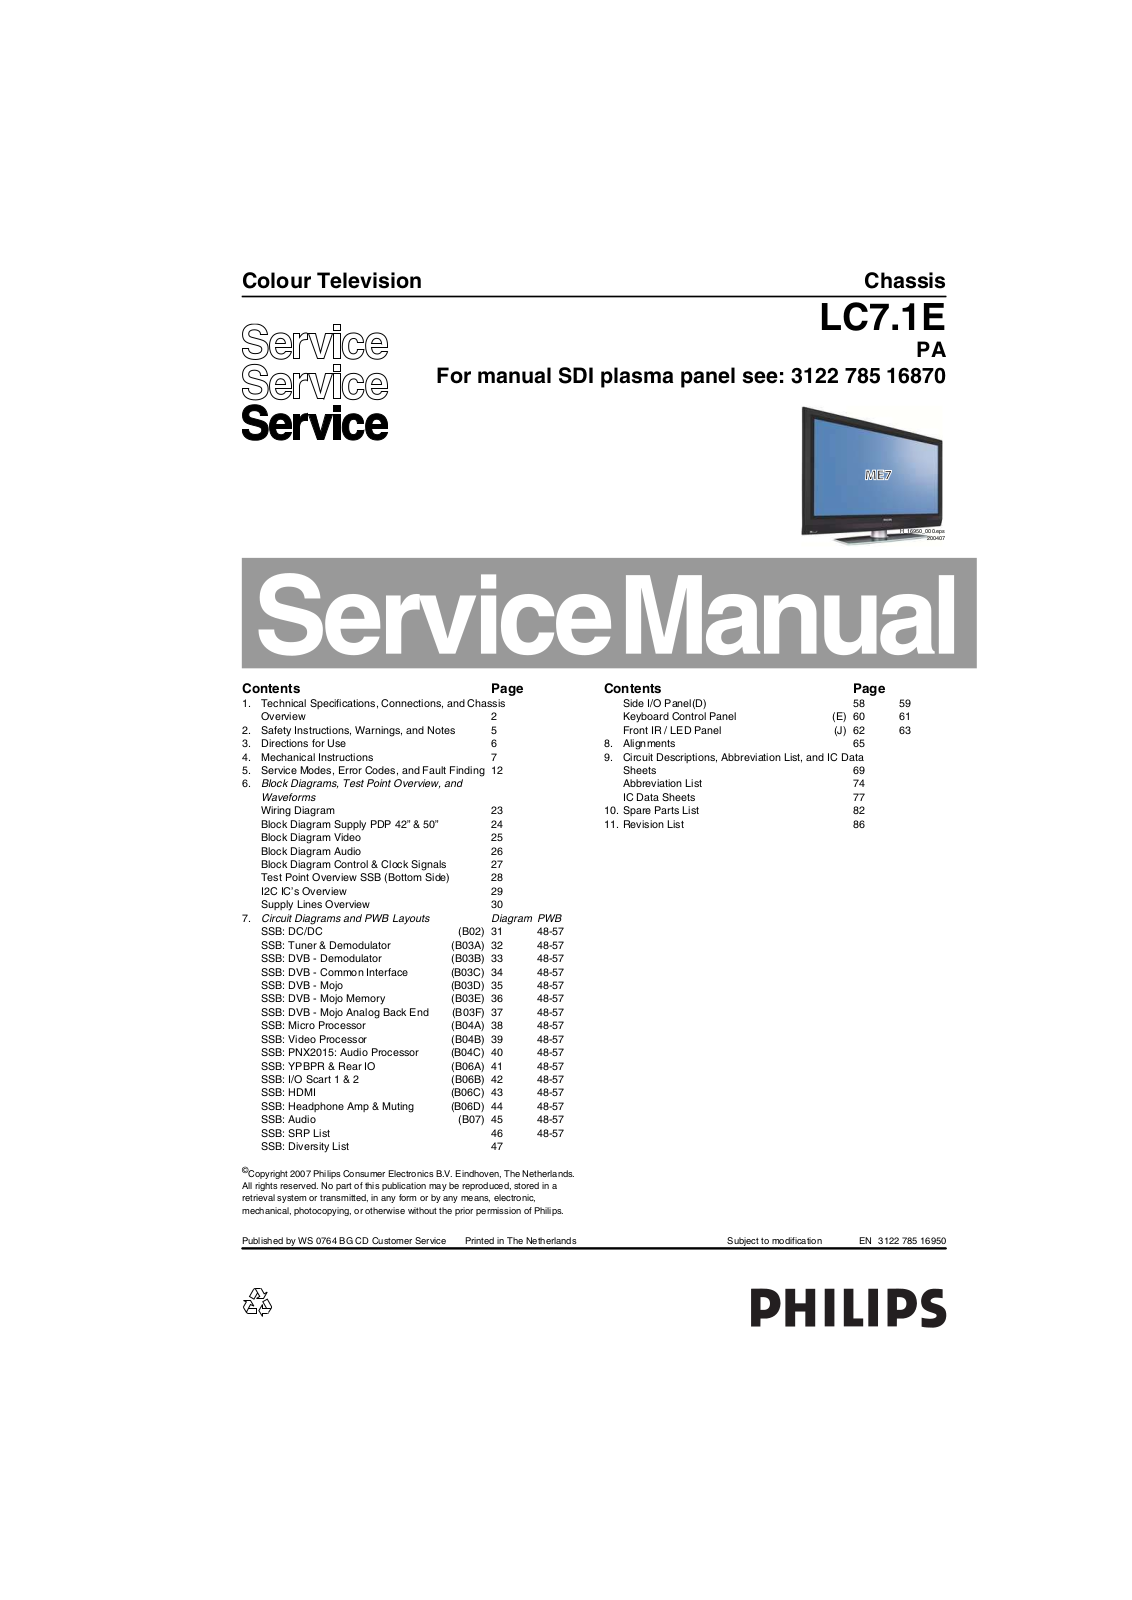 Philips LC7.1E PA Service Manual